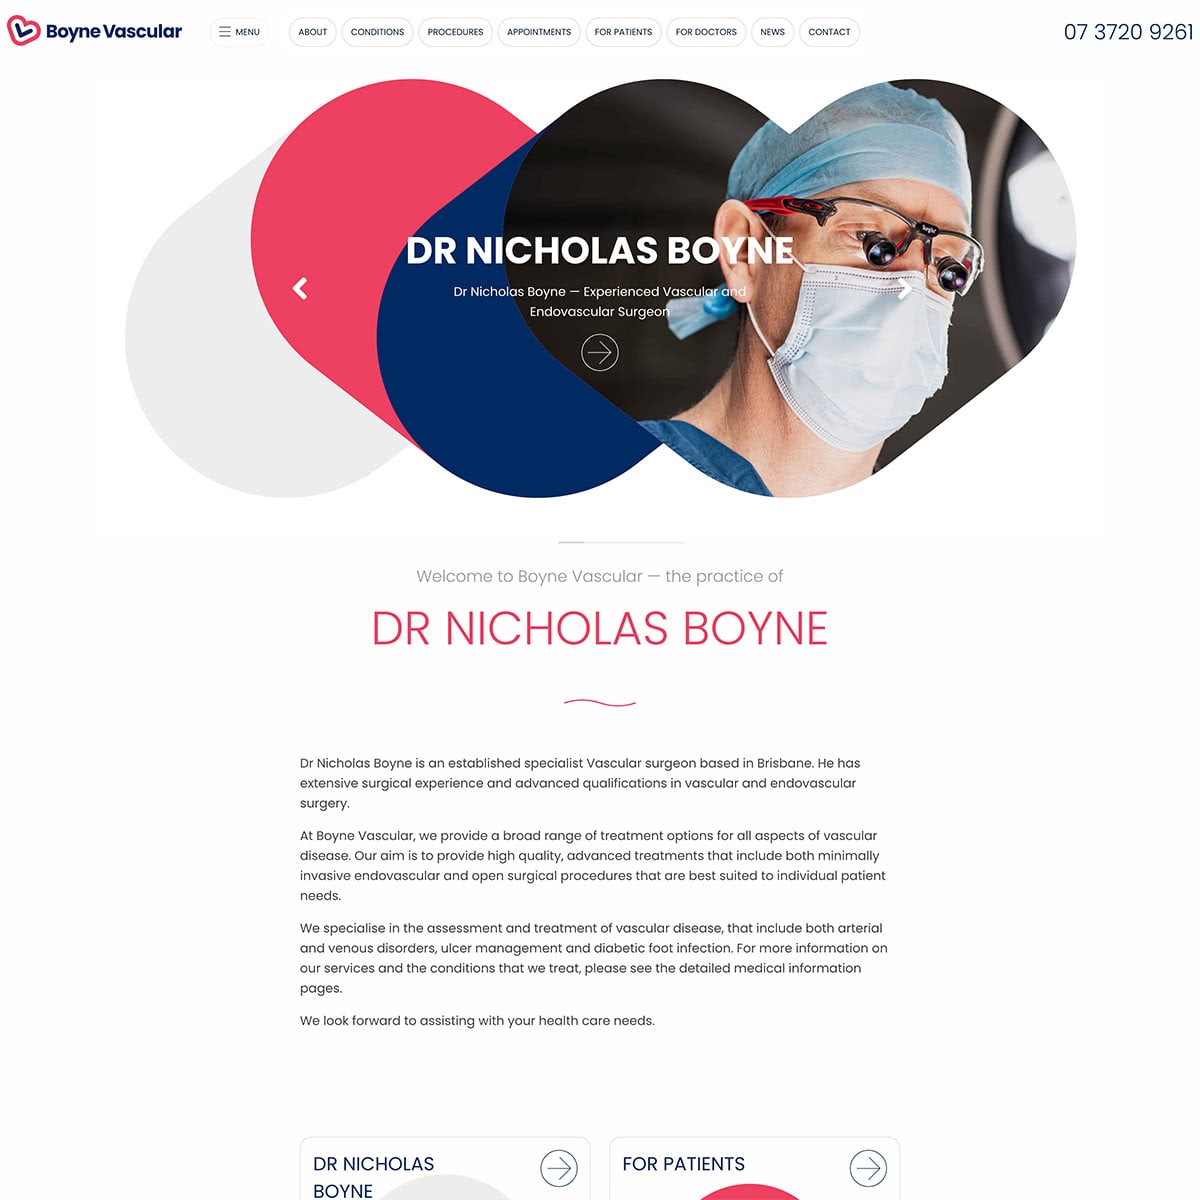 Boyne Vascular - Homepage - Wide Display